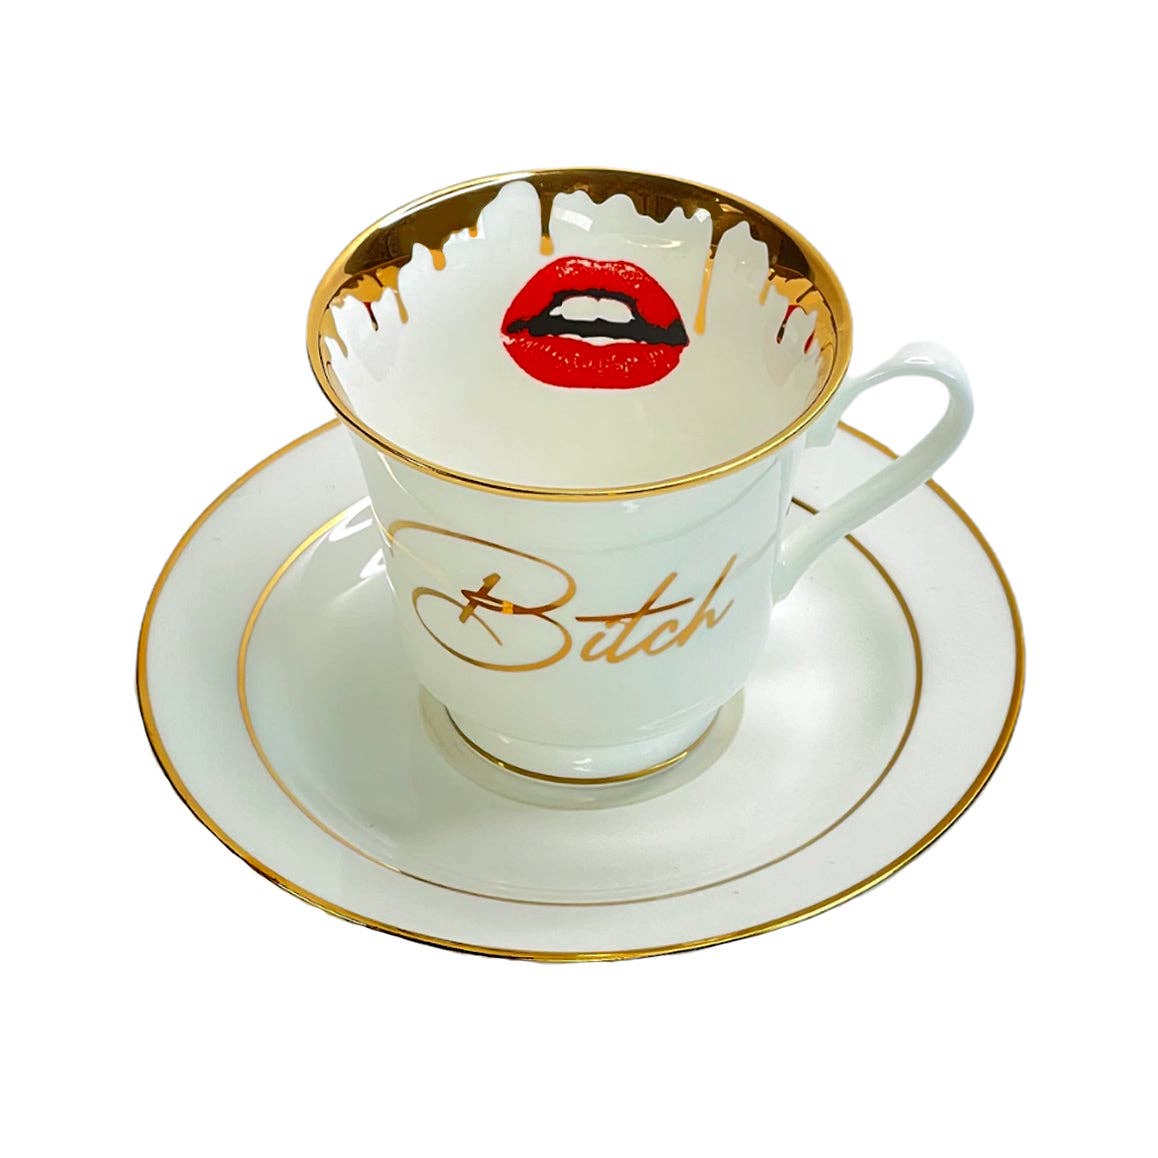 Bitch Tea Cup